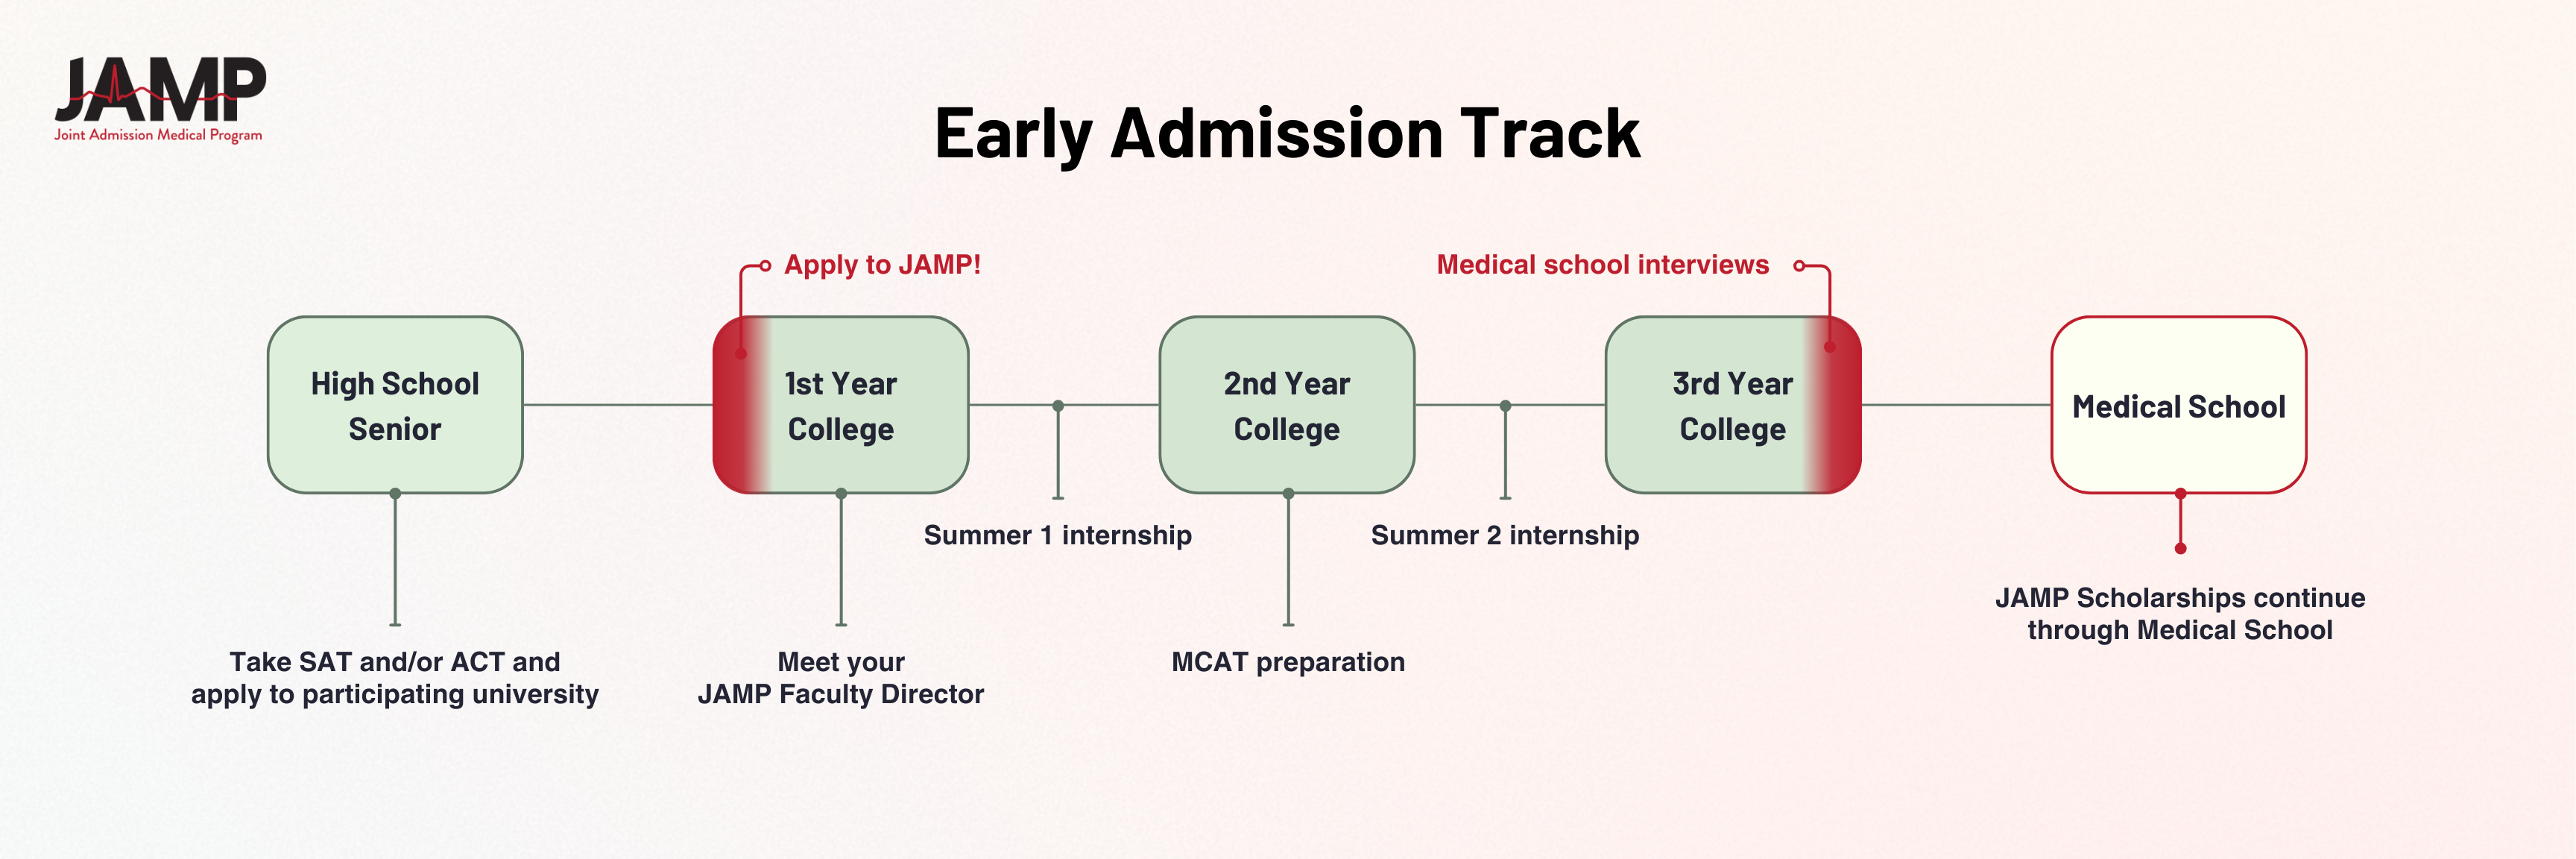 JAMP Early Admission timeline